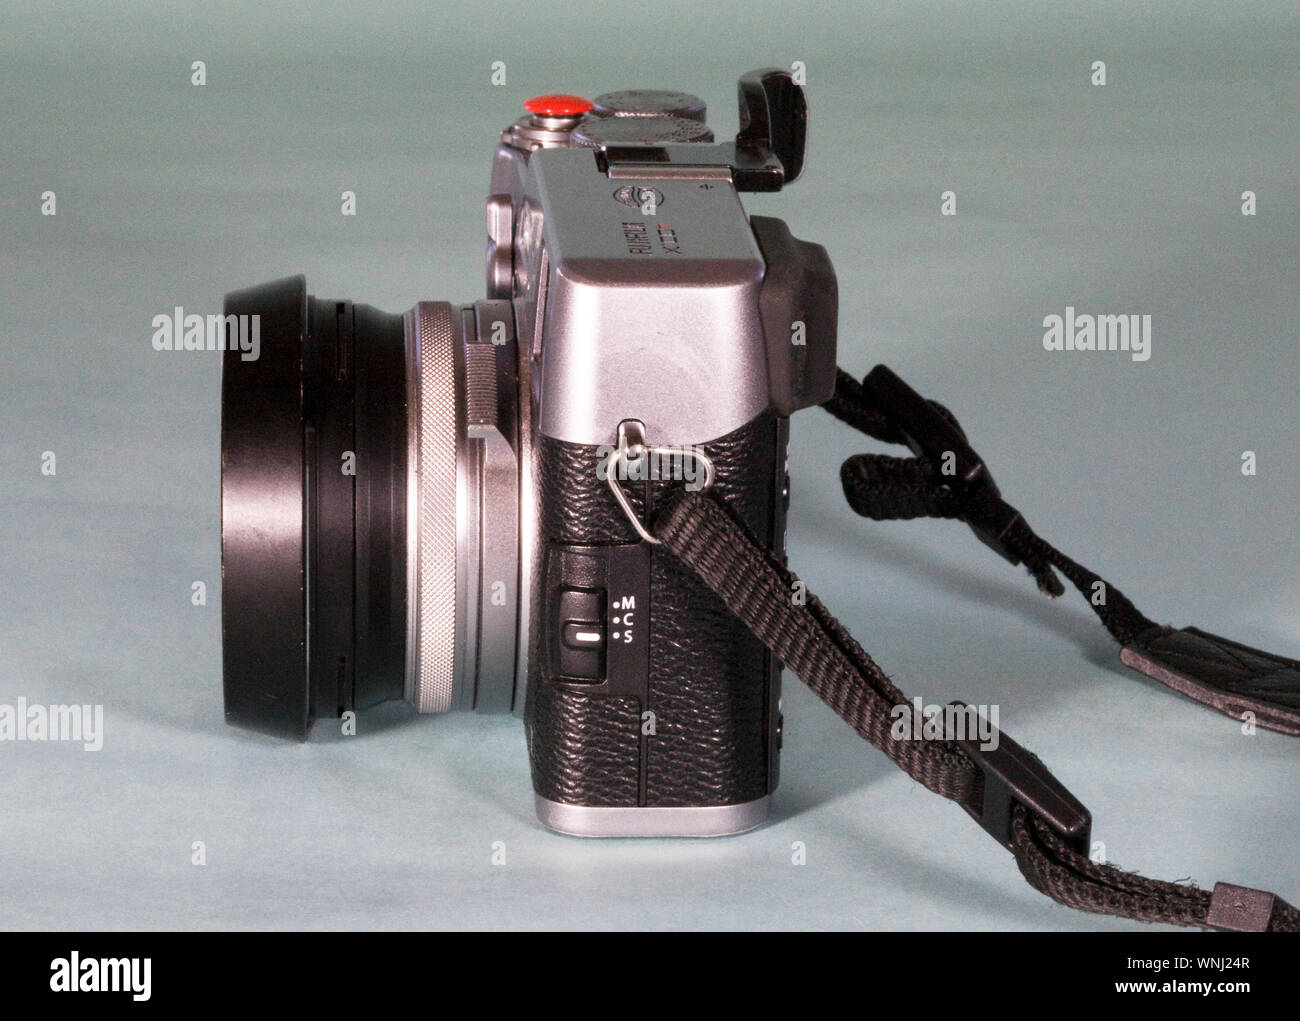 Détail d'un appareil photo reflex numérique, Japonais, faite par Fuji, avec  un objectif à focale fixe Photo Stock - Alamy